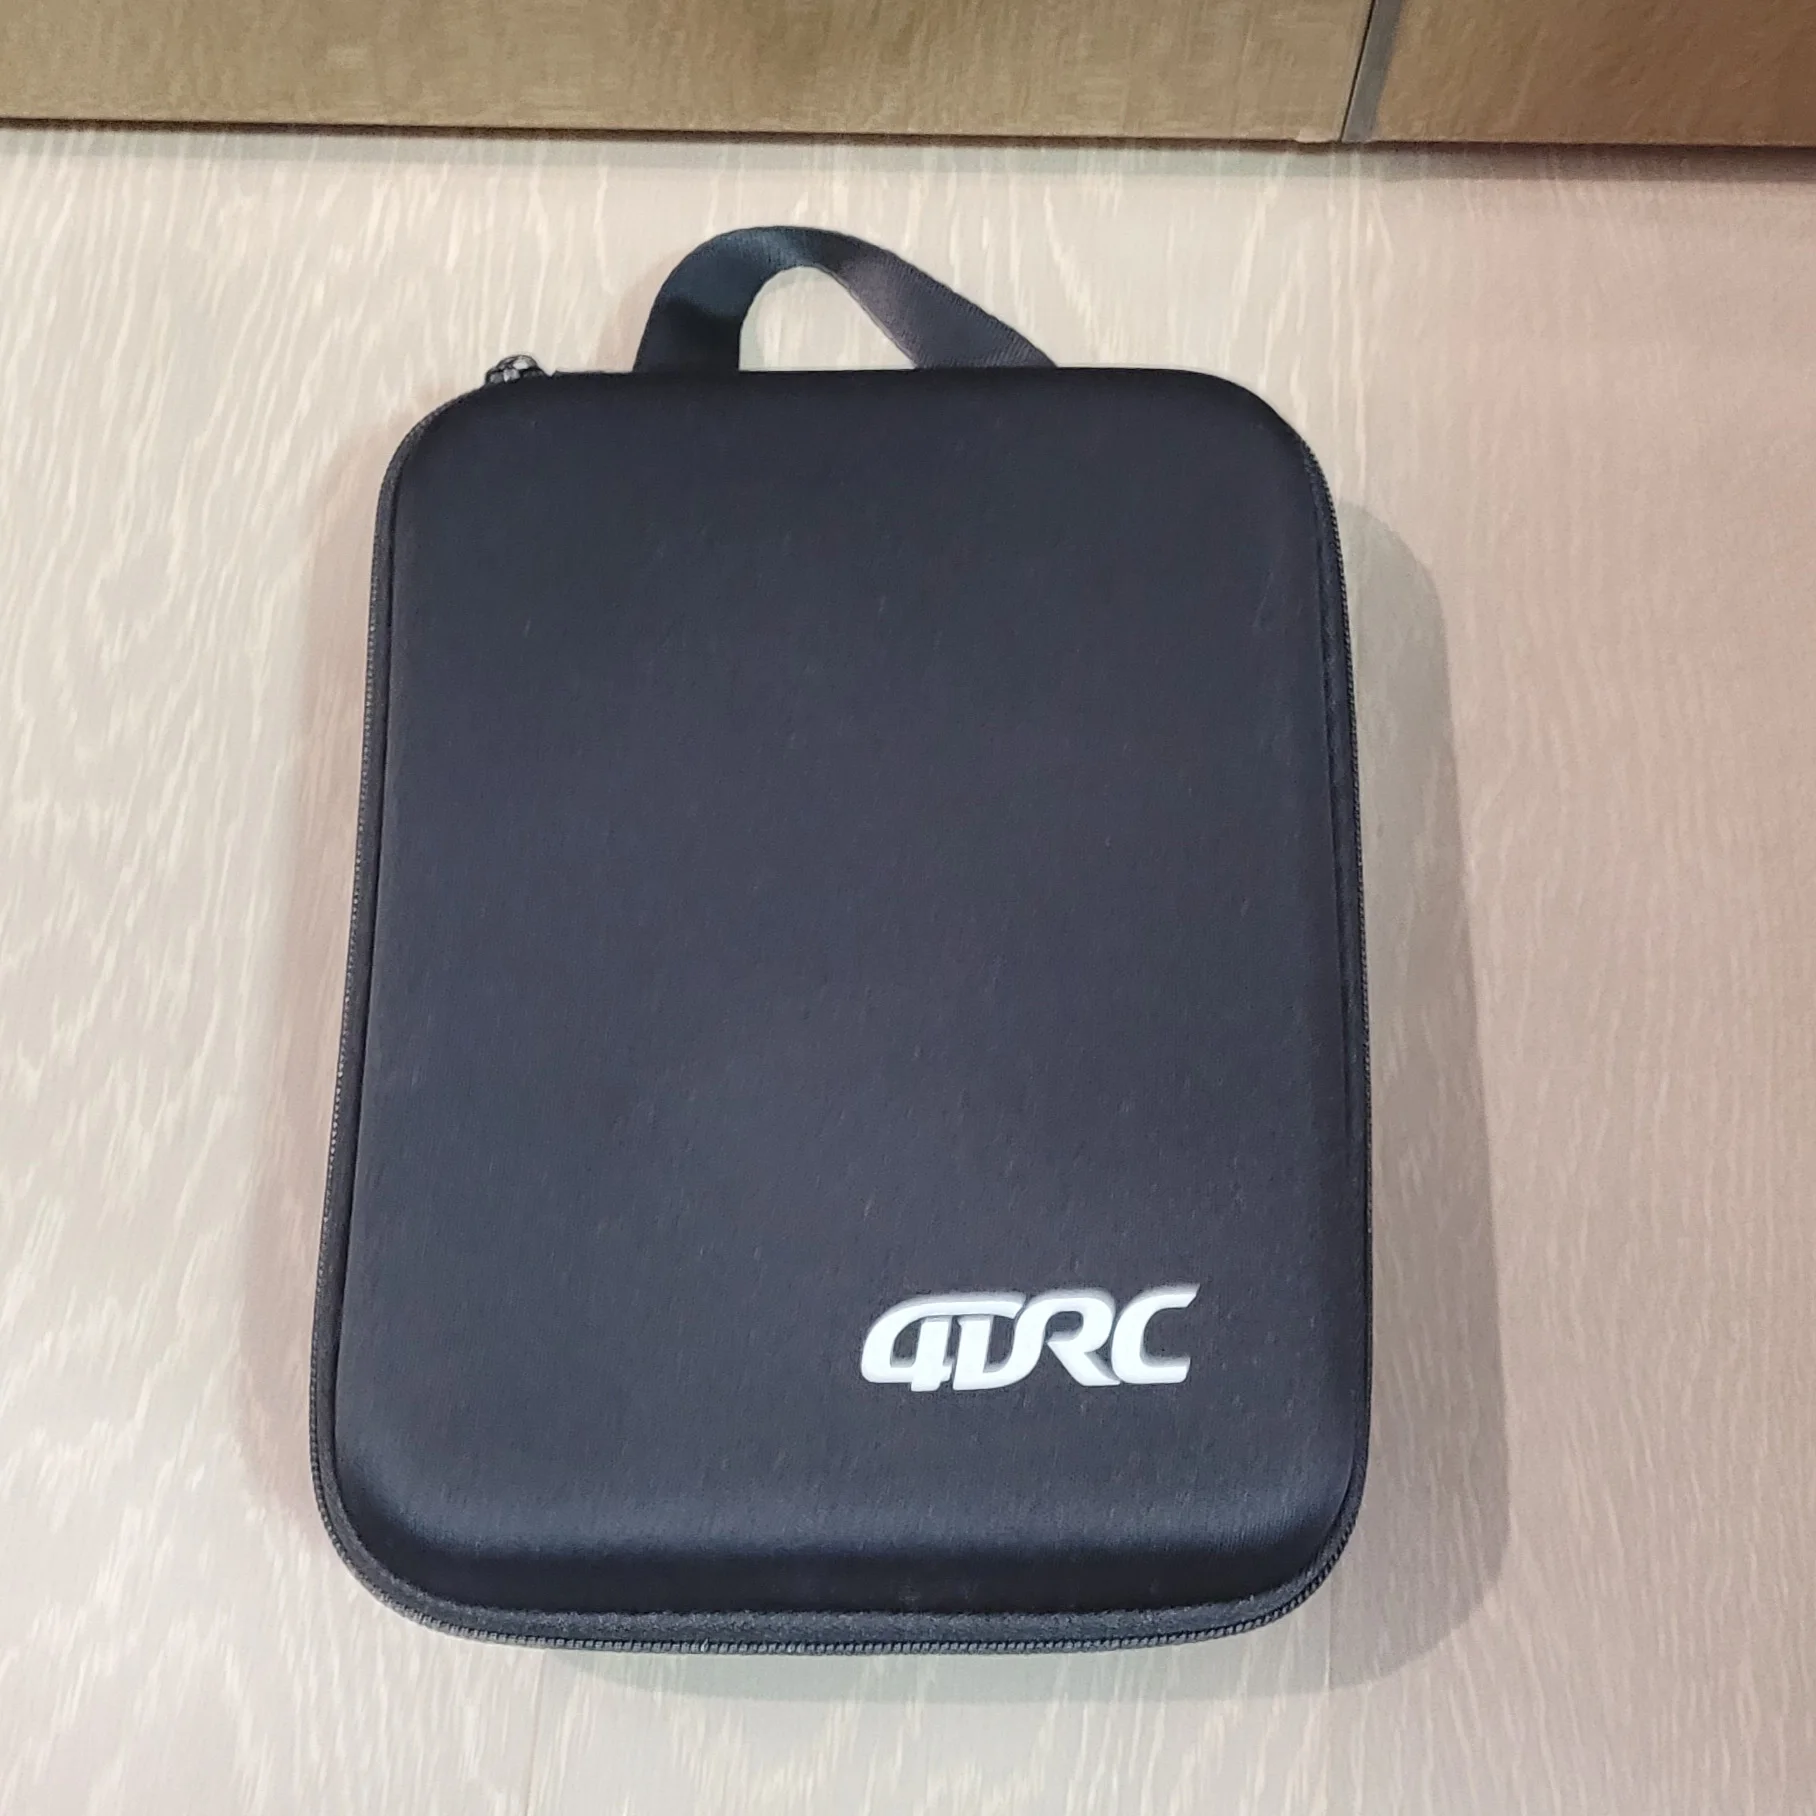 

4DRC Drone Original Bag for 4D V8 Mini Drone V8 Wifi FPV Quadcopter Storage Bag RC Airplane Carrying Bag Accecssory